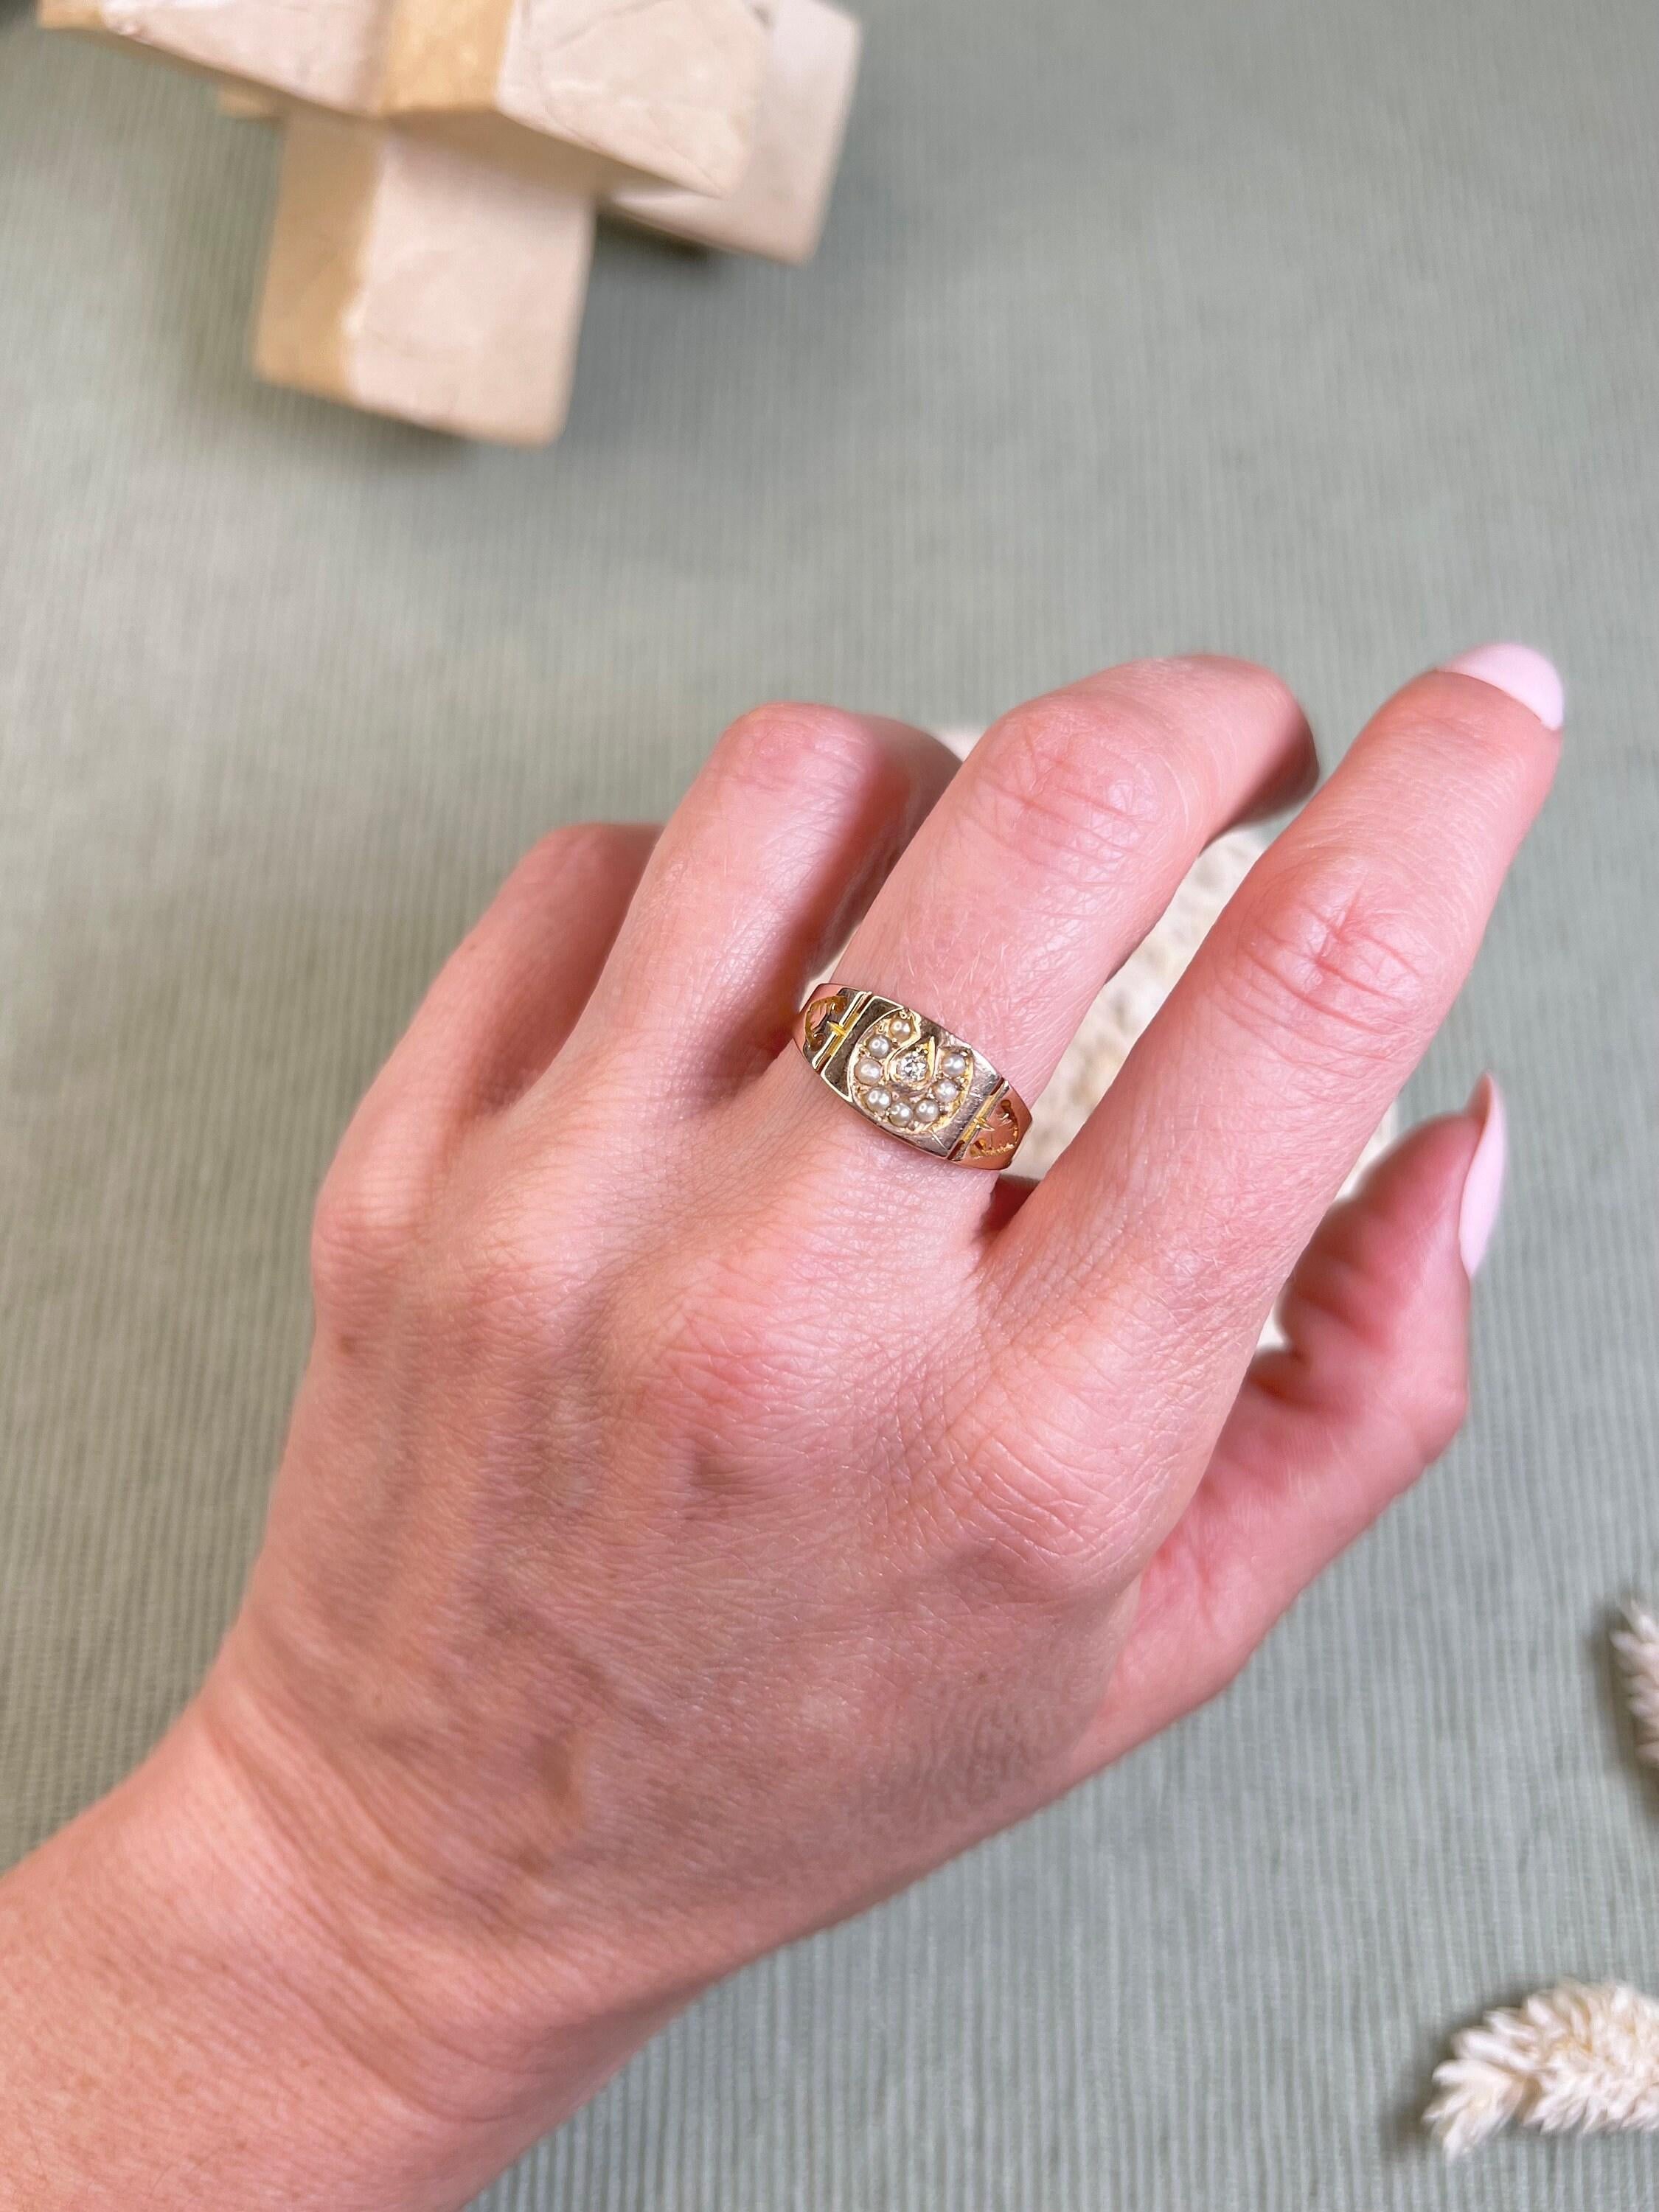 Antiker Hufeisenring 

15ct Gold gestempelt 

Gepunzt Chester 1885

Schöner, viktorianischer Ring im Bandstil. Mit hübschen, natürlichen Saatperlen in Hufeisenform und einem natürlichen Diamanten als Mittelstein. 
Der Ring hat hübsche, herzförmige,